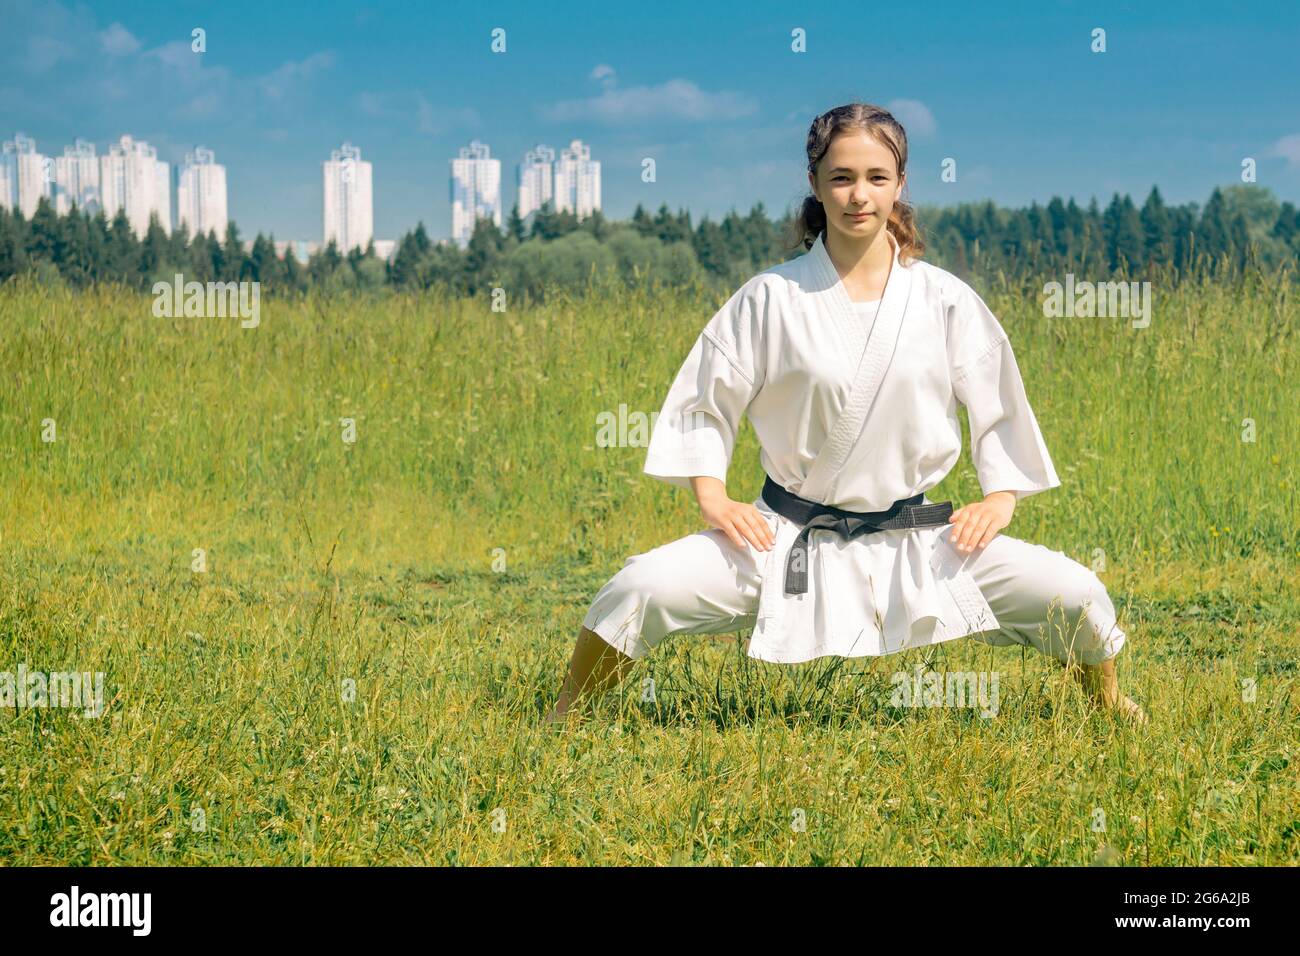 Teen Mädchen Durchführung Karate Kata im Freien in kiba-dachi Haltung Stockfoto